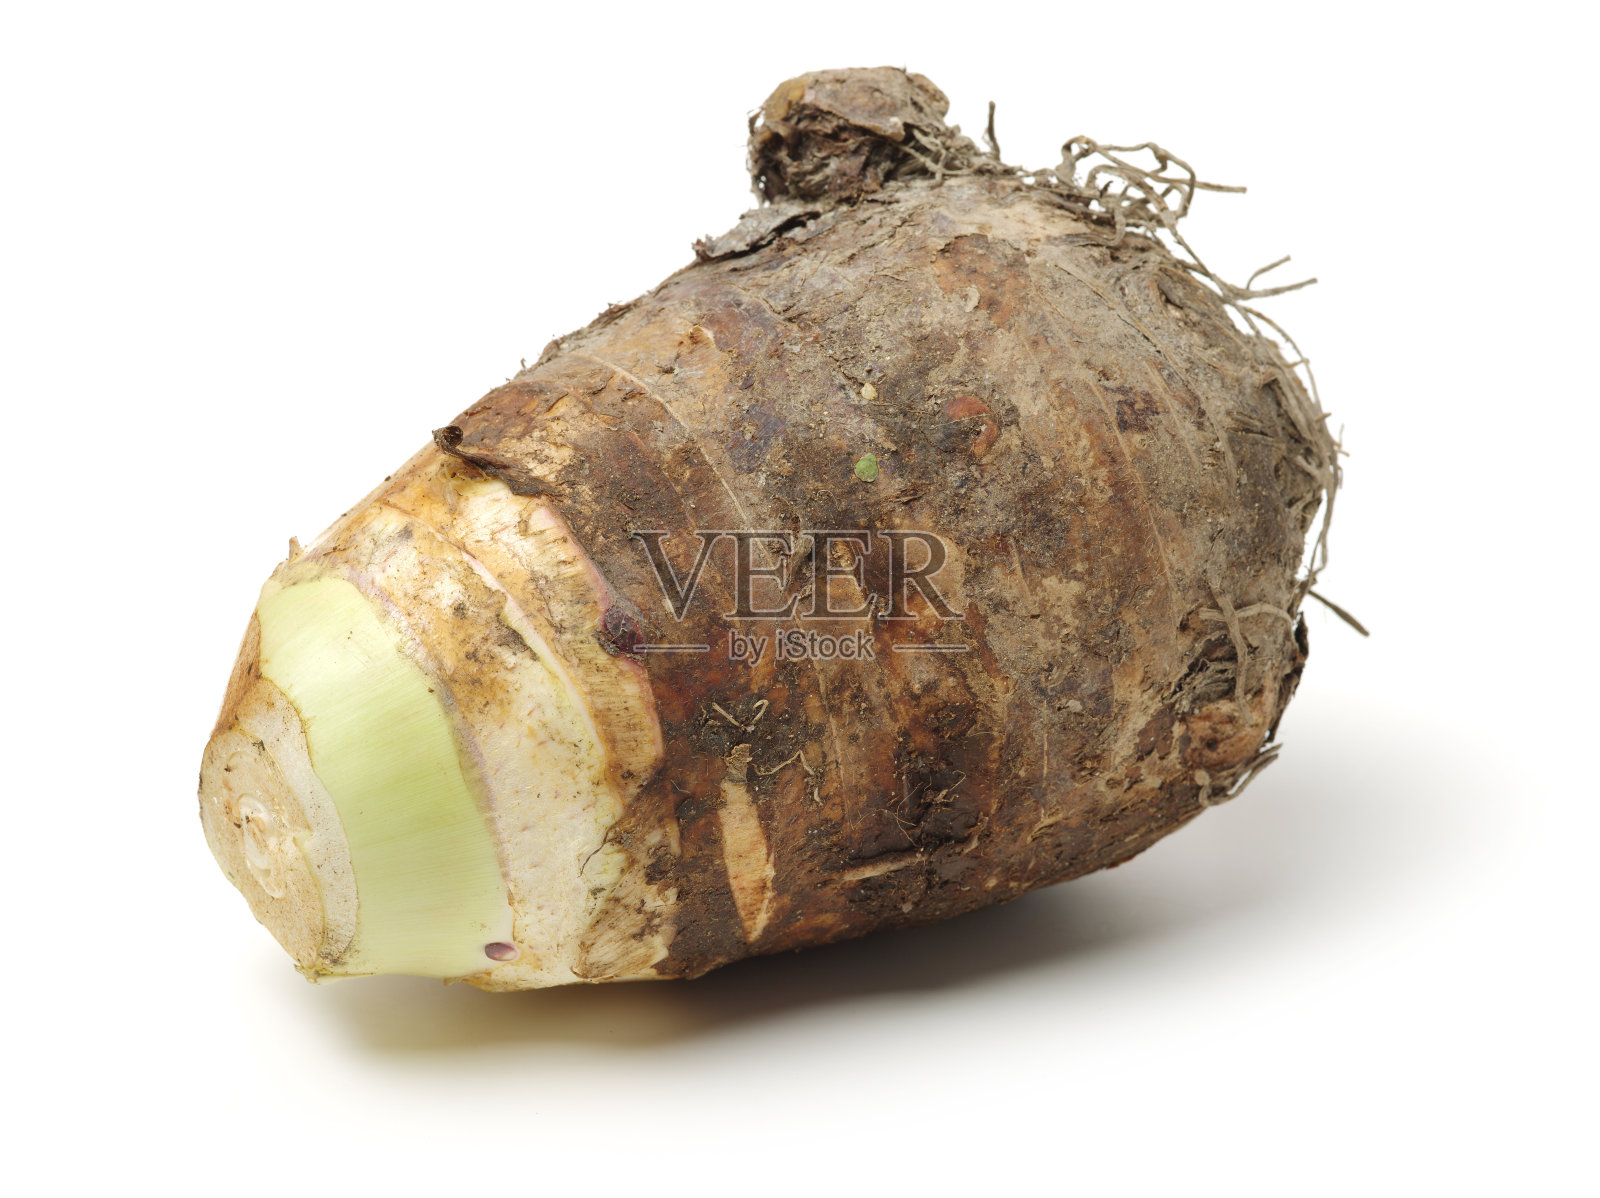 芋头根，也被称为'dasheen '，'日本马铃薯'，' cocoyam照片摄影图片